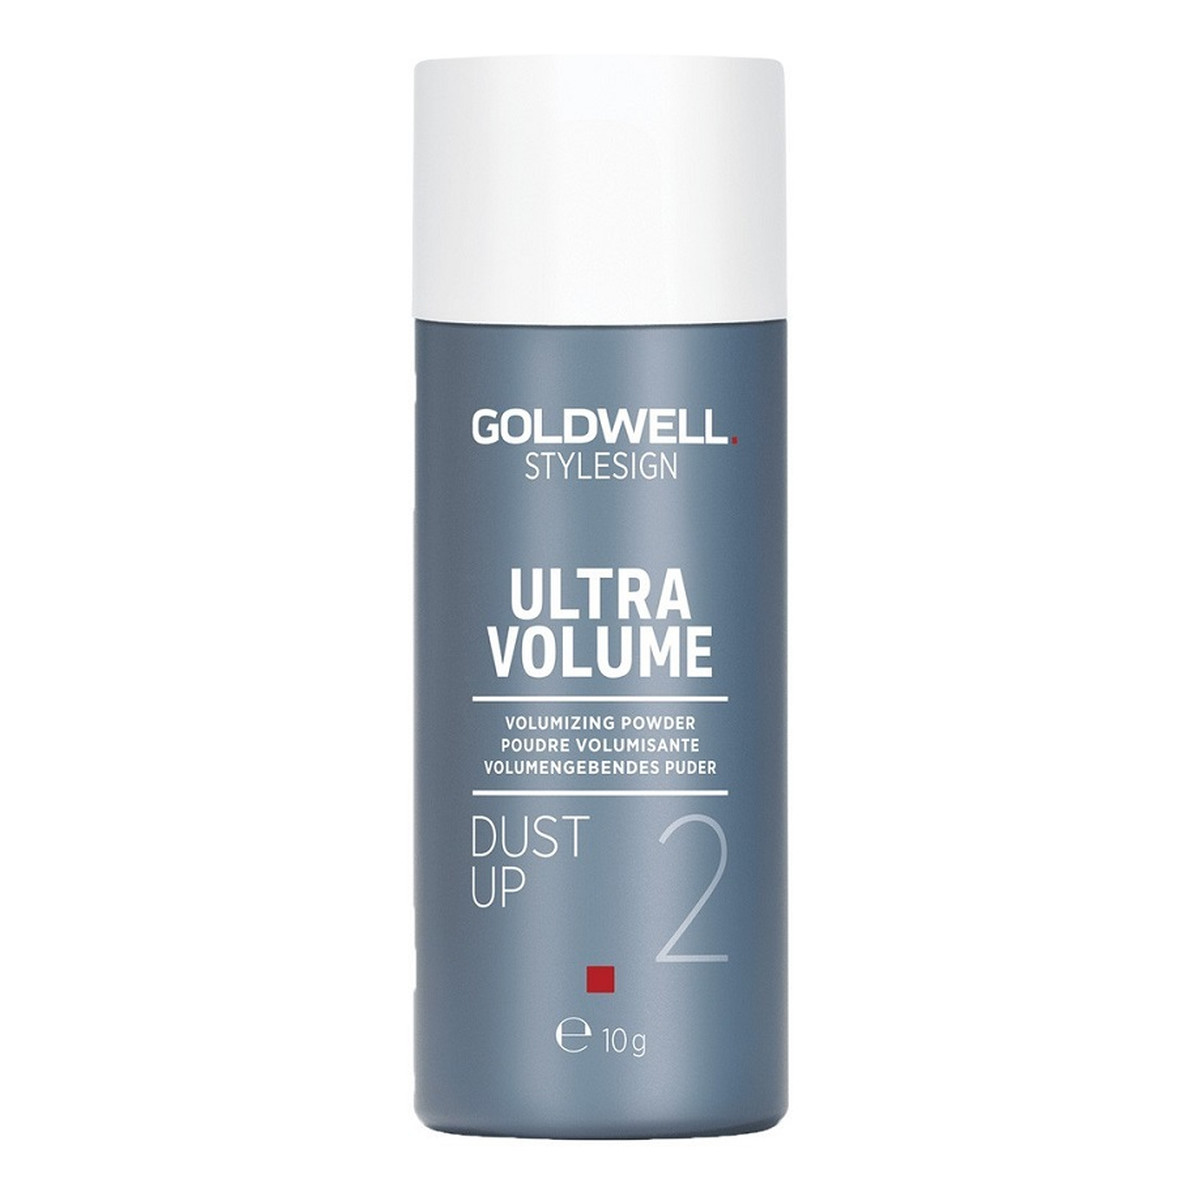 Goldwell Stylesign Ultra Volume Volumizing Powder Dust Up 2 puder zwiększający objętość włosów 10g